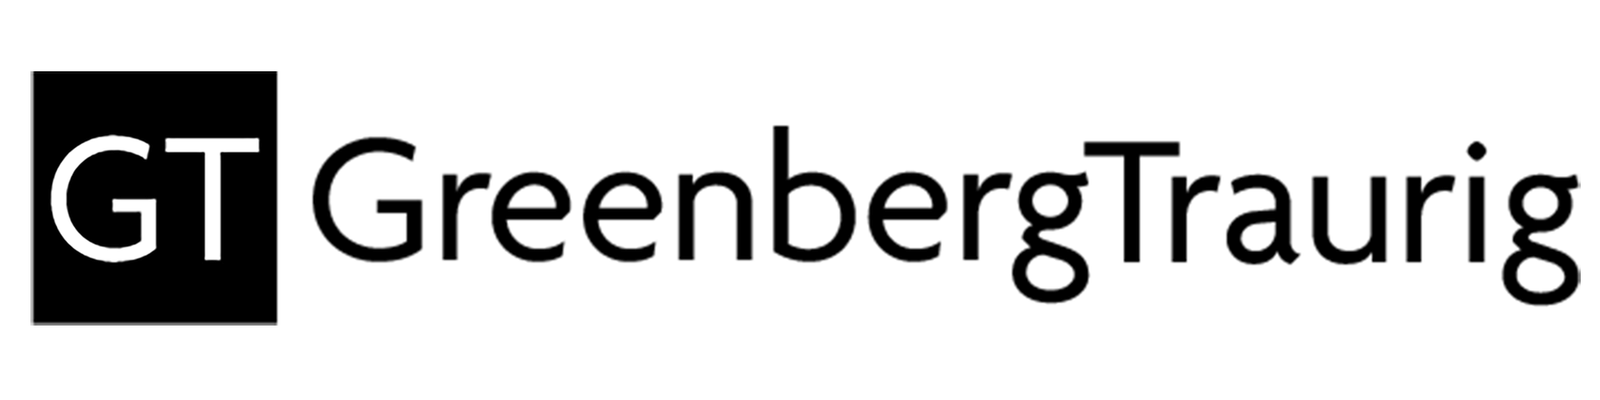 Greenberg Traurig, LLP logo